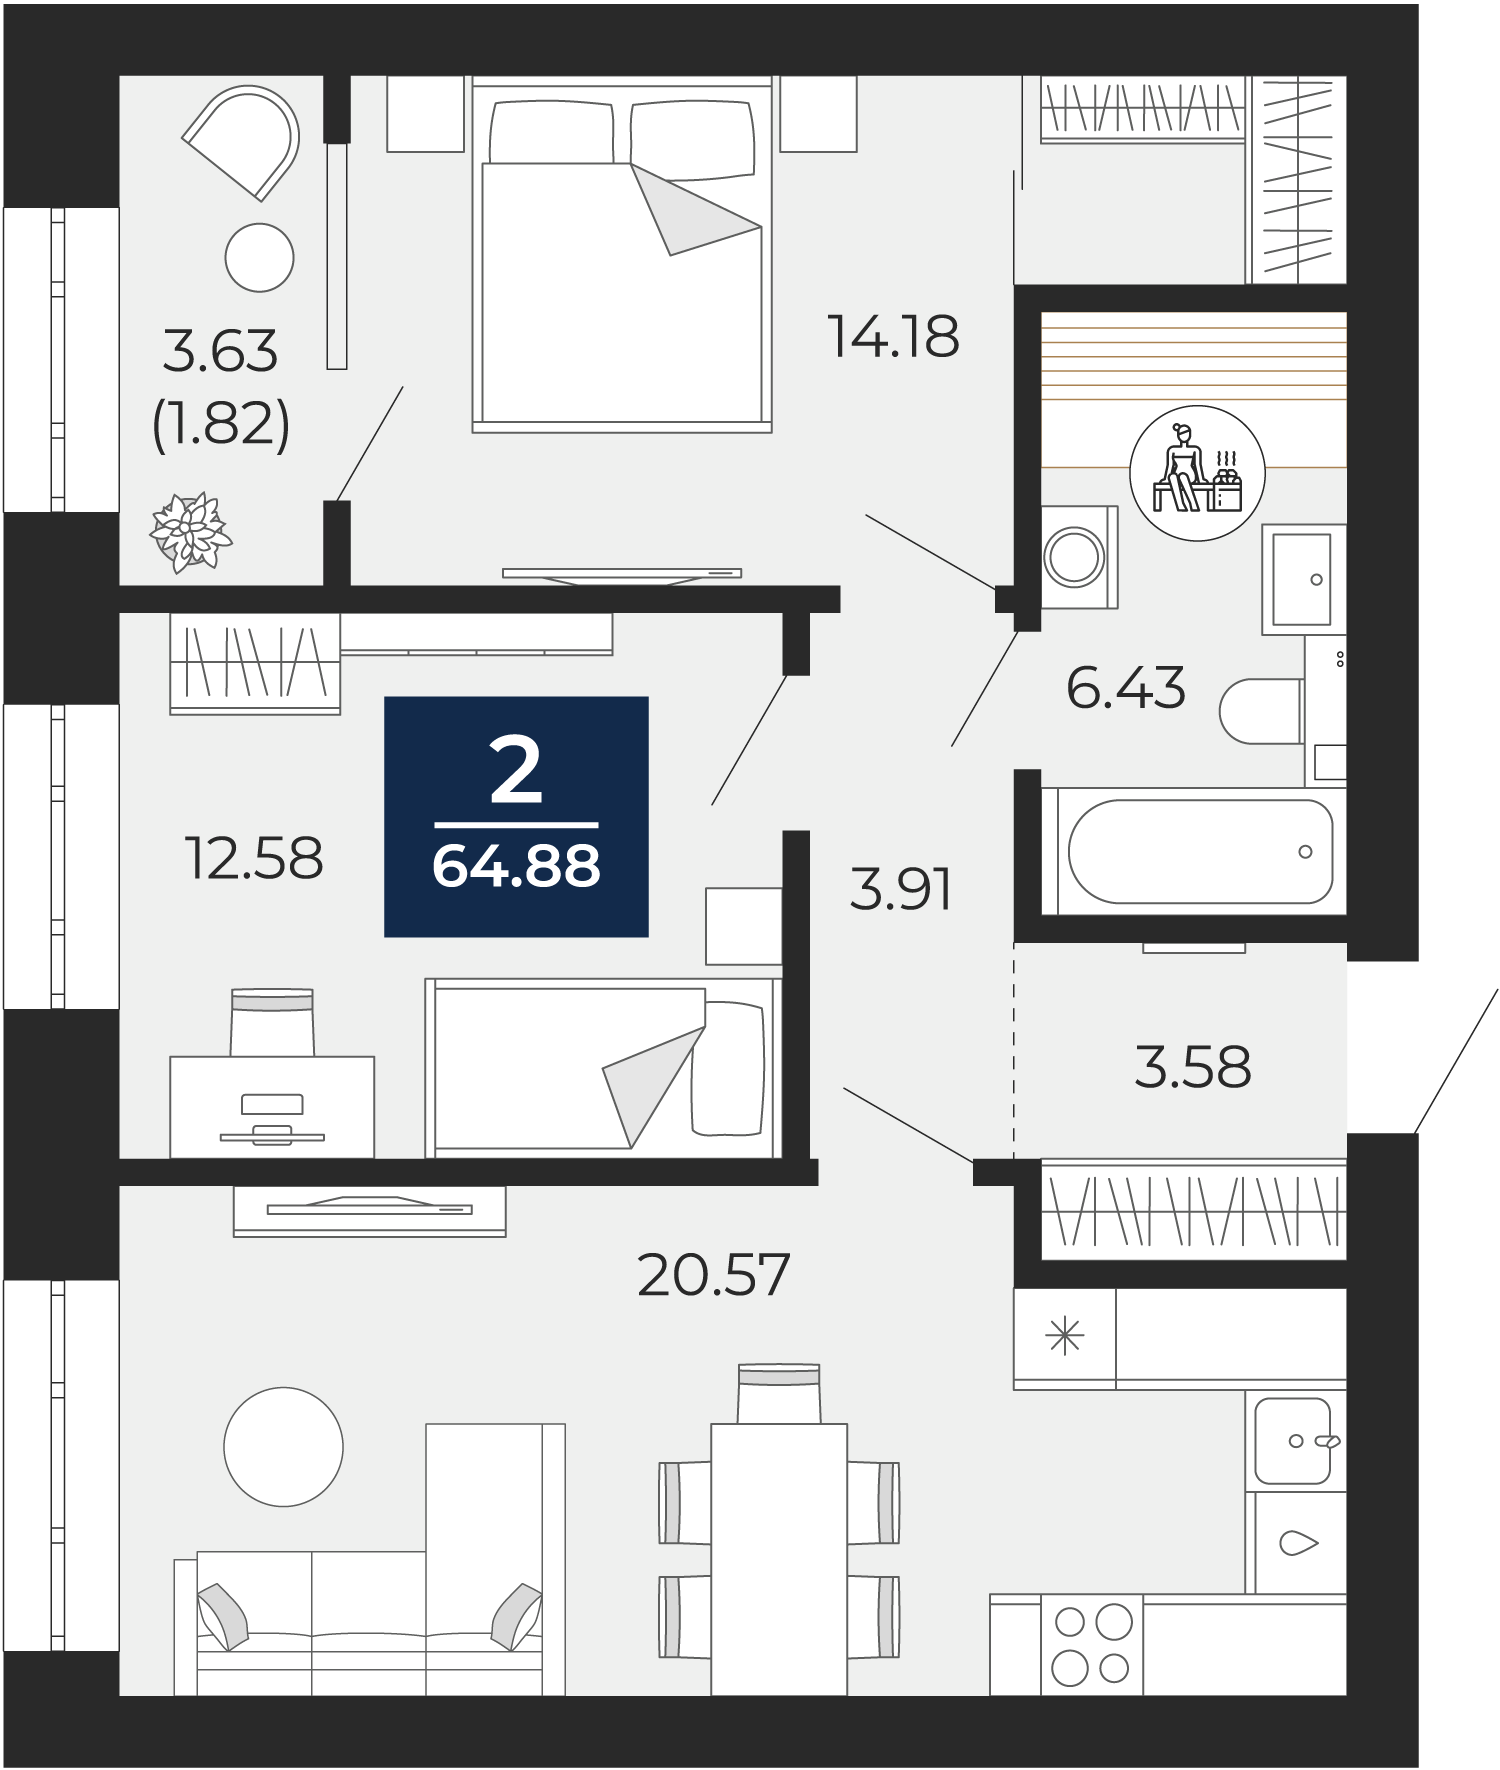 Квартира № 53, 2-комнатная, 64.88 кв. м, 2 этаж